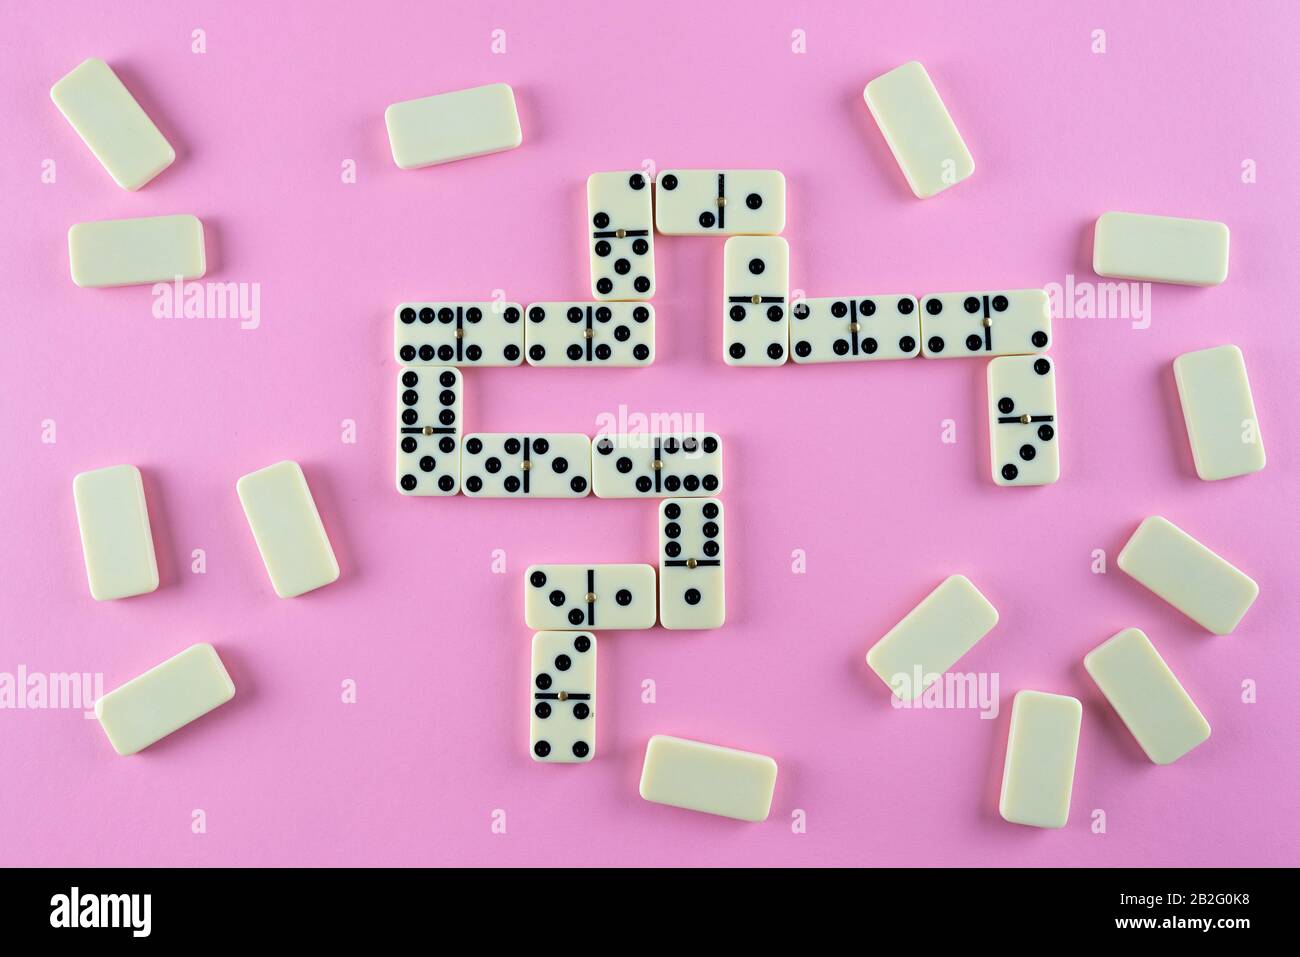 Draufsicht auf Domino-Kacheln auf pinkfarbenem Hintergrund Stockfoto